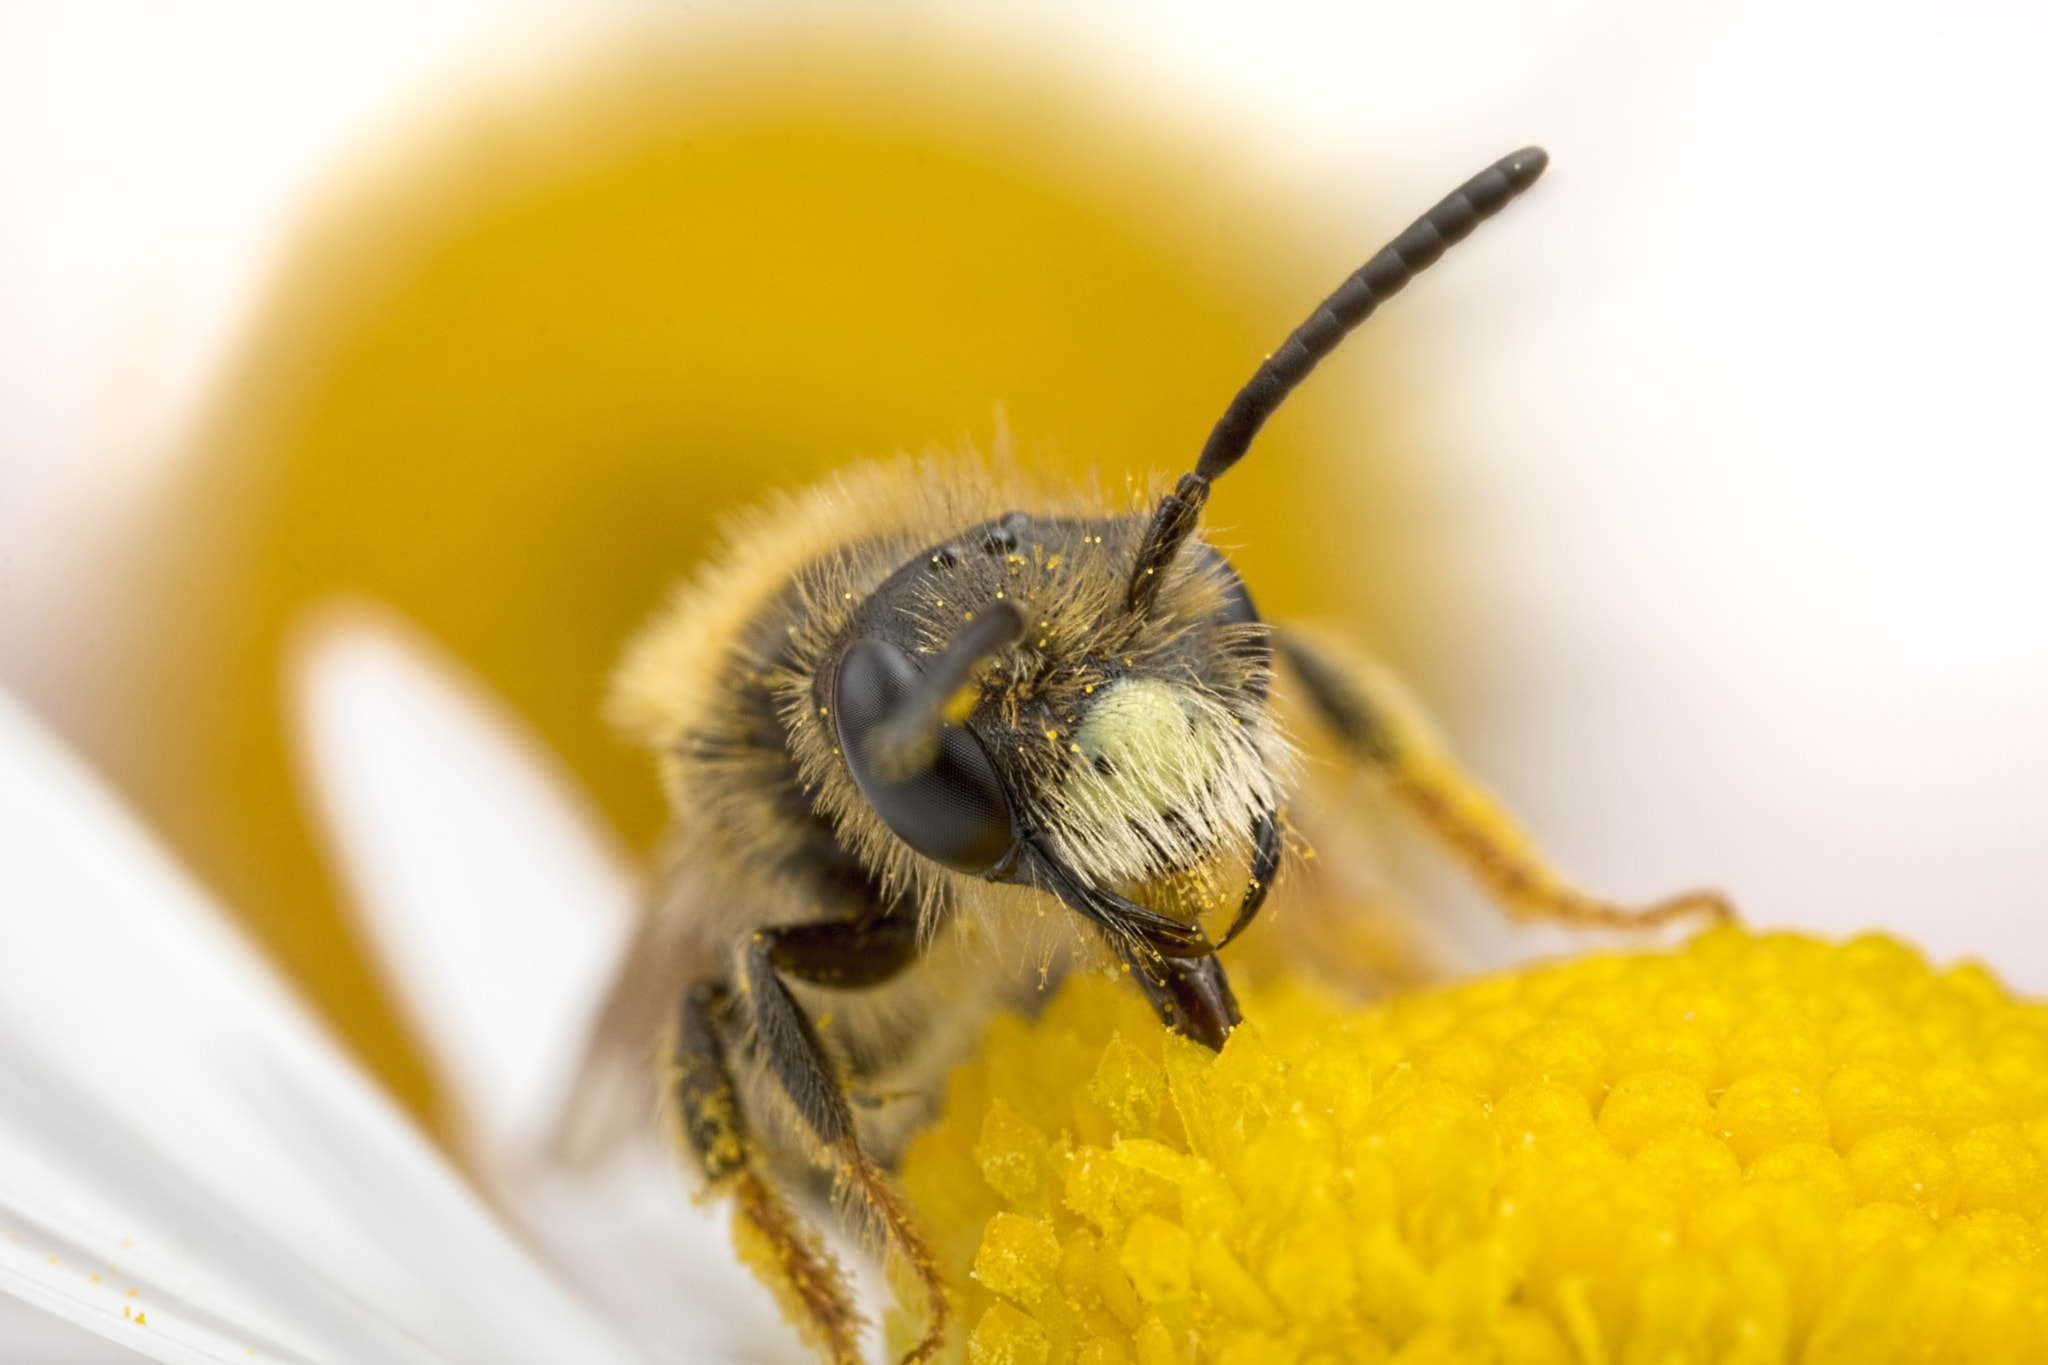 Canon EOS 760D (EOS Rebel T6s / EOS 8000D) + Canon MP-E 65mm F2.5 1-5x Macro Photo sample photo. Solitary bee feeding in daisy photography